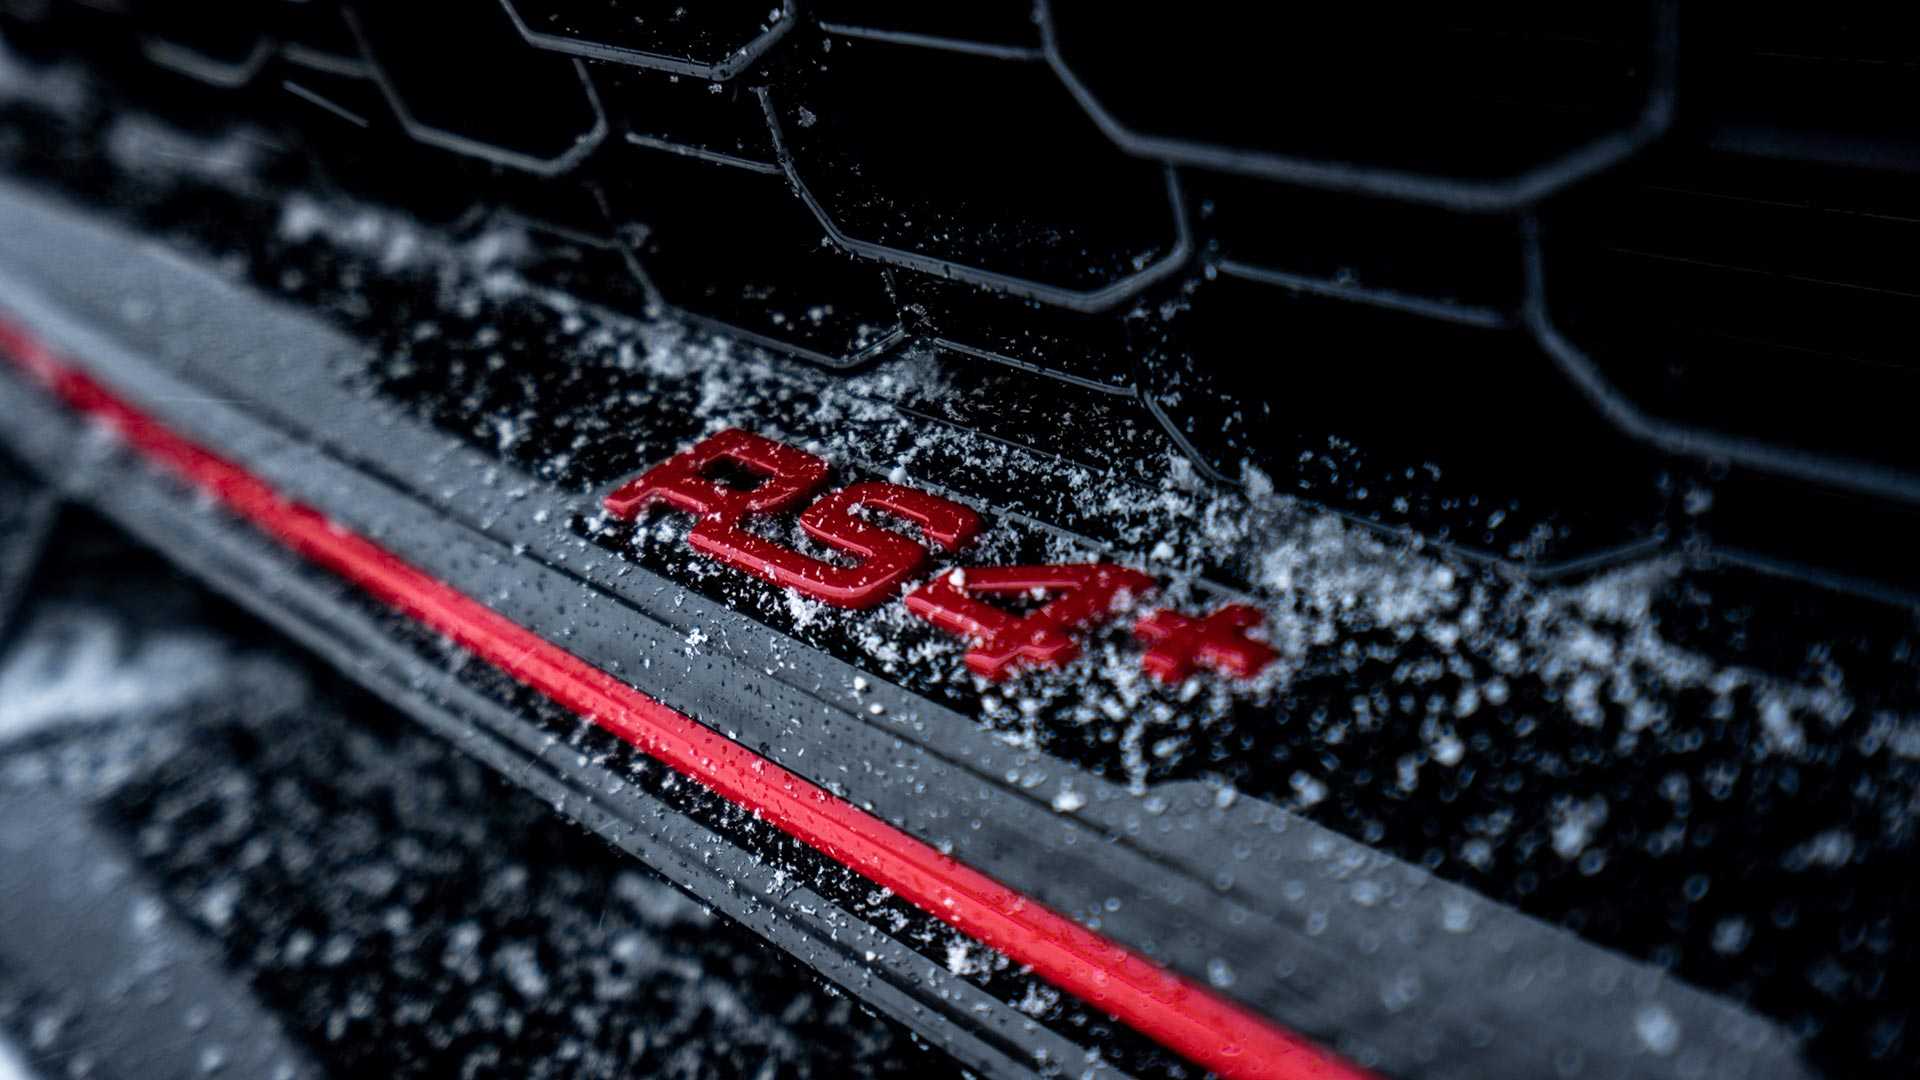 ABT Audi RS4+